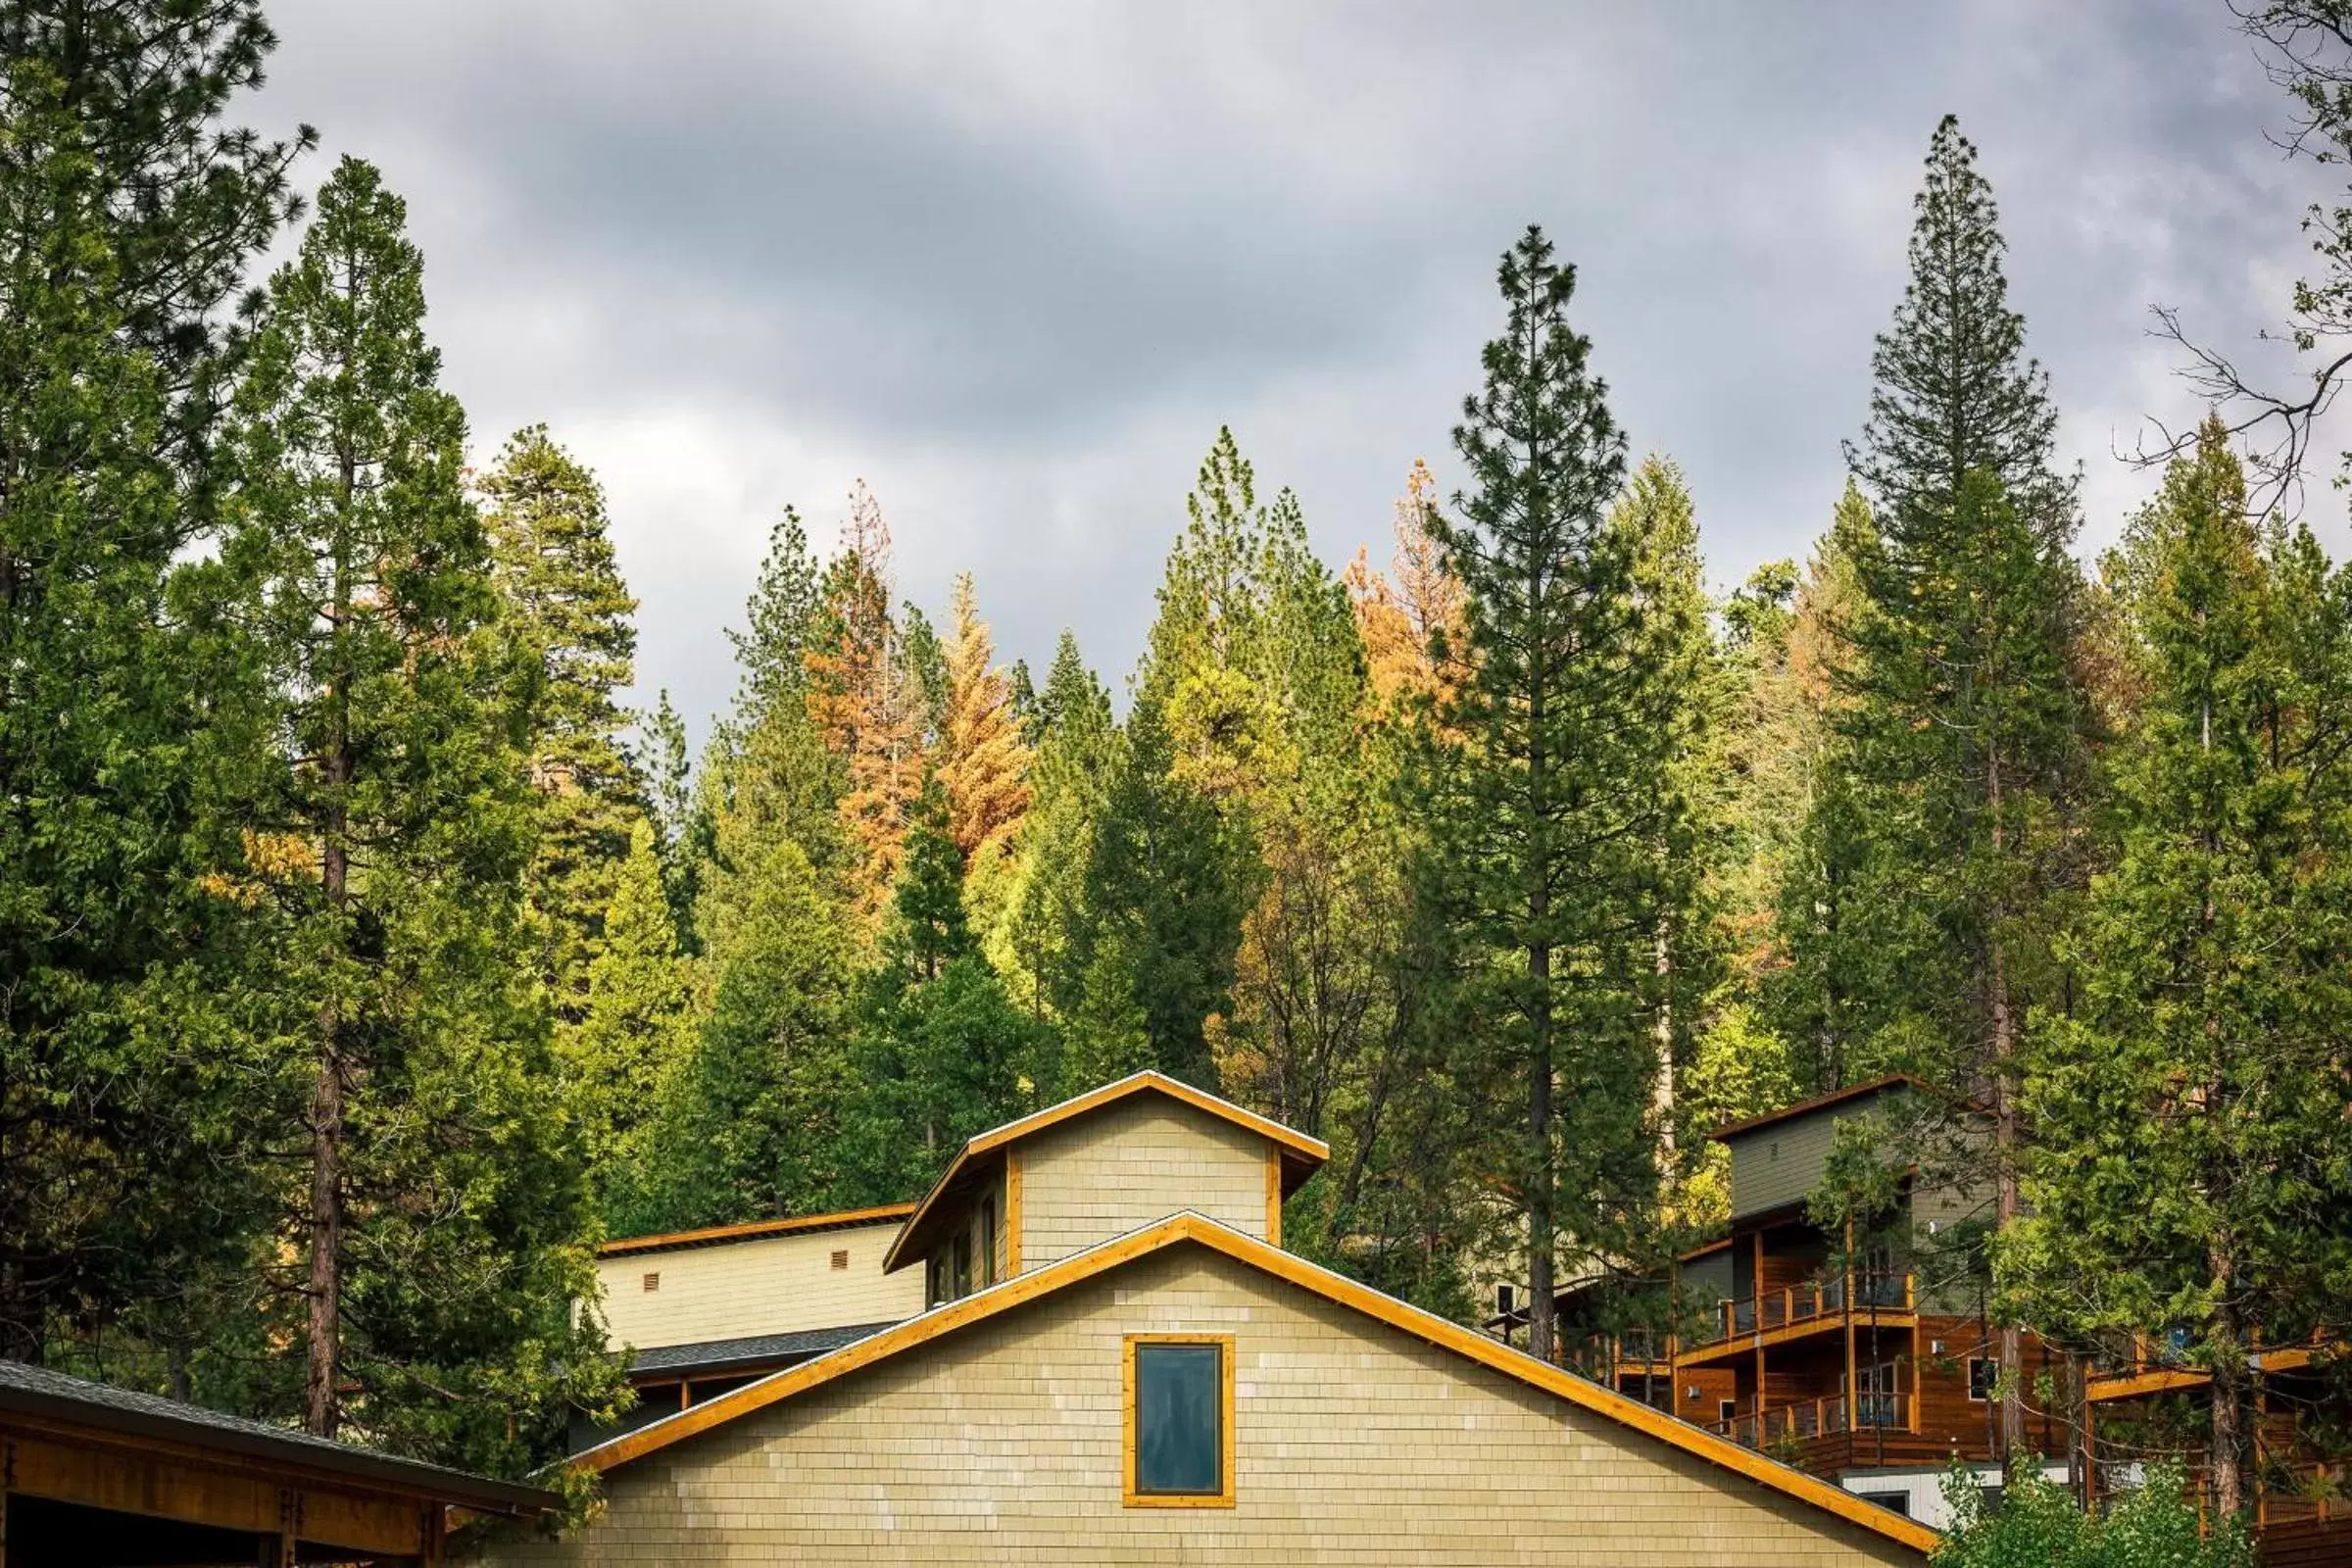 Property building in Rush Creek Lodge at Yosemite